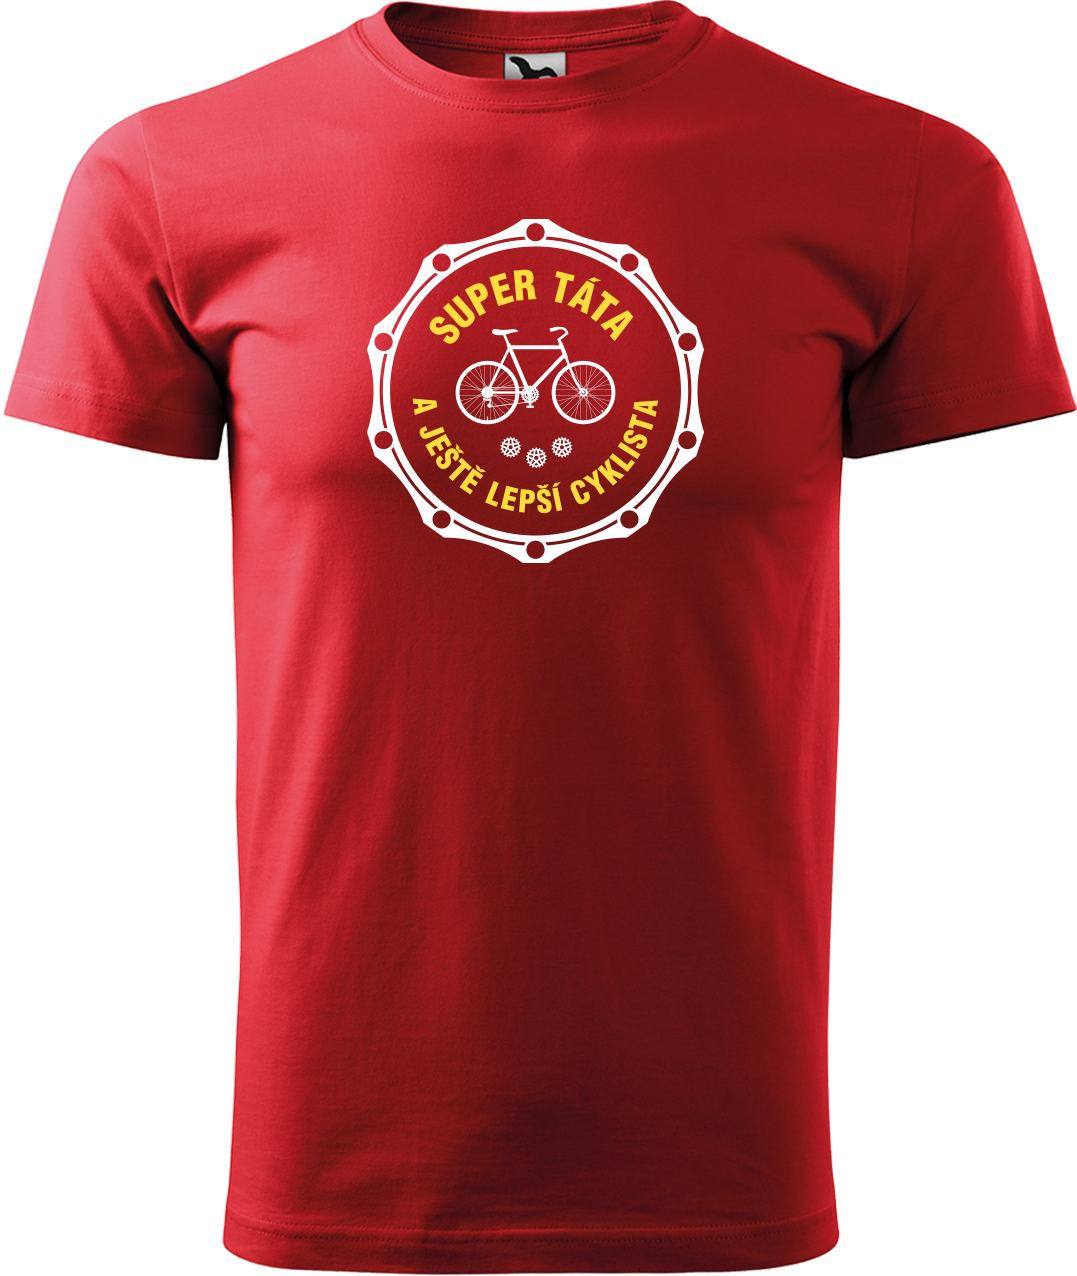 Pánské tričko pro cyklistu - Super táta a ještě lepší cyklista Velikost: XL, Barva: Červená (07)